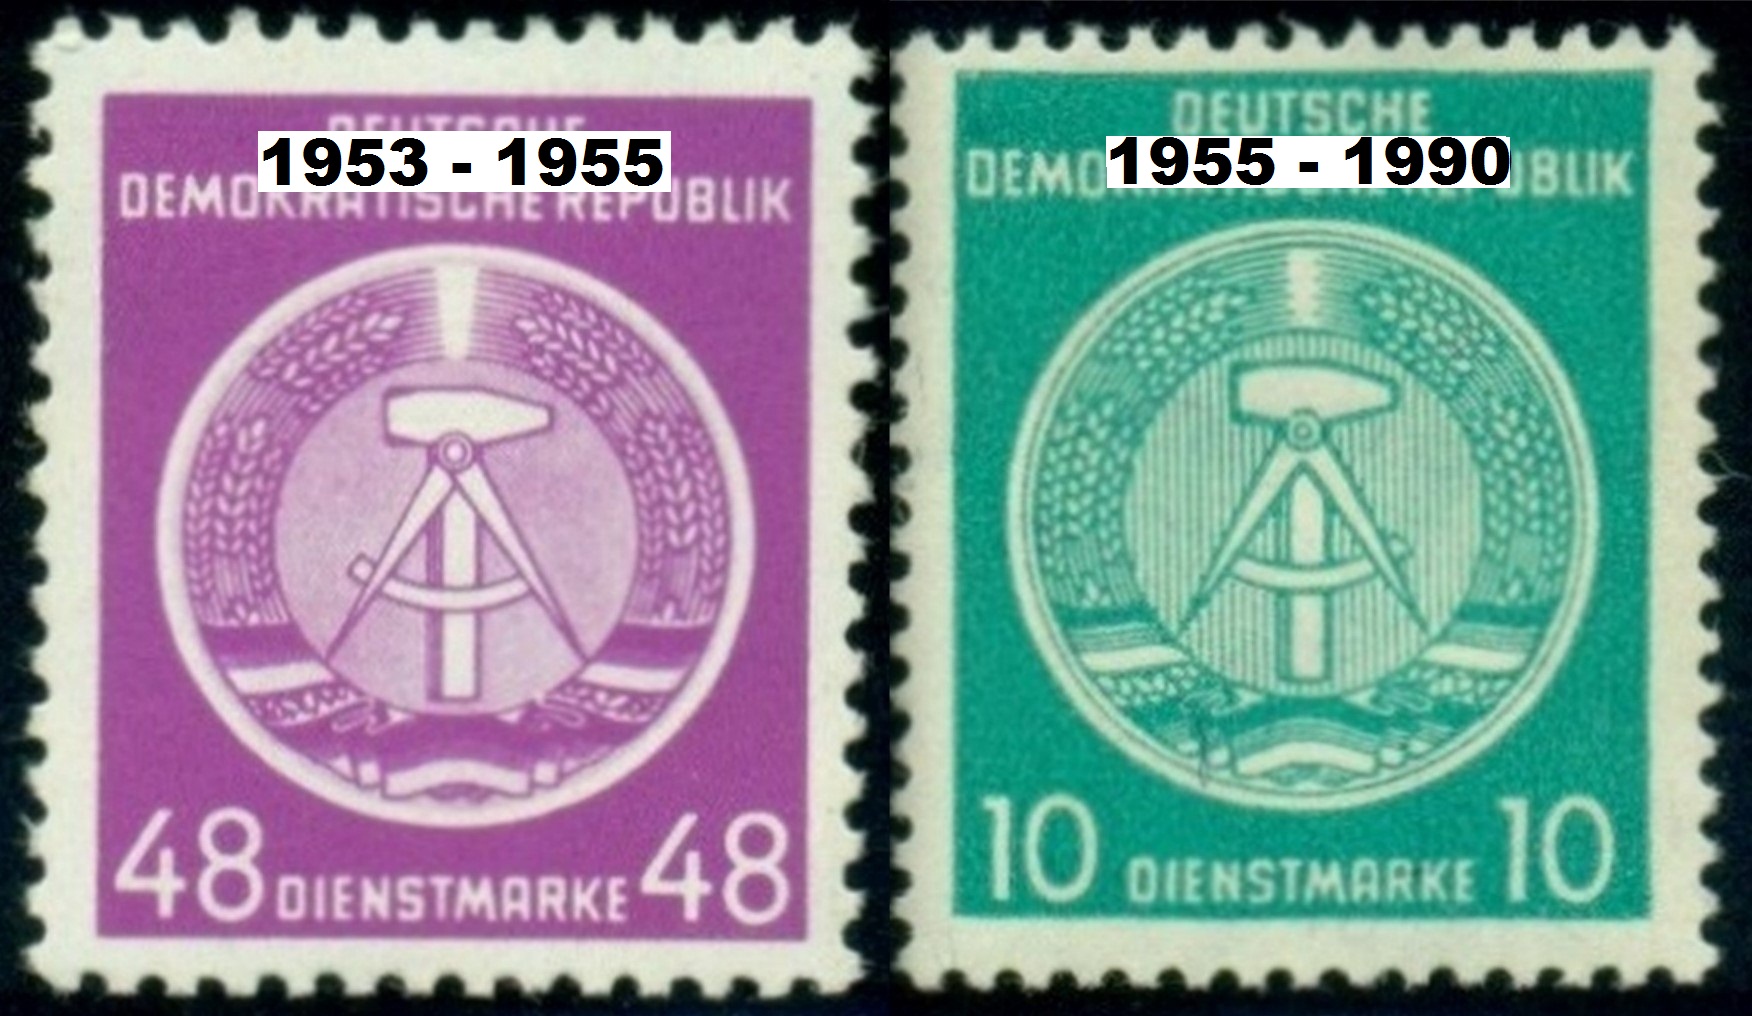 NDR. známka vpravo vyšla rok před úpravou státního znaku.